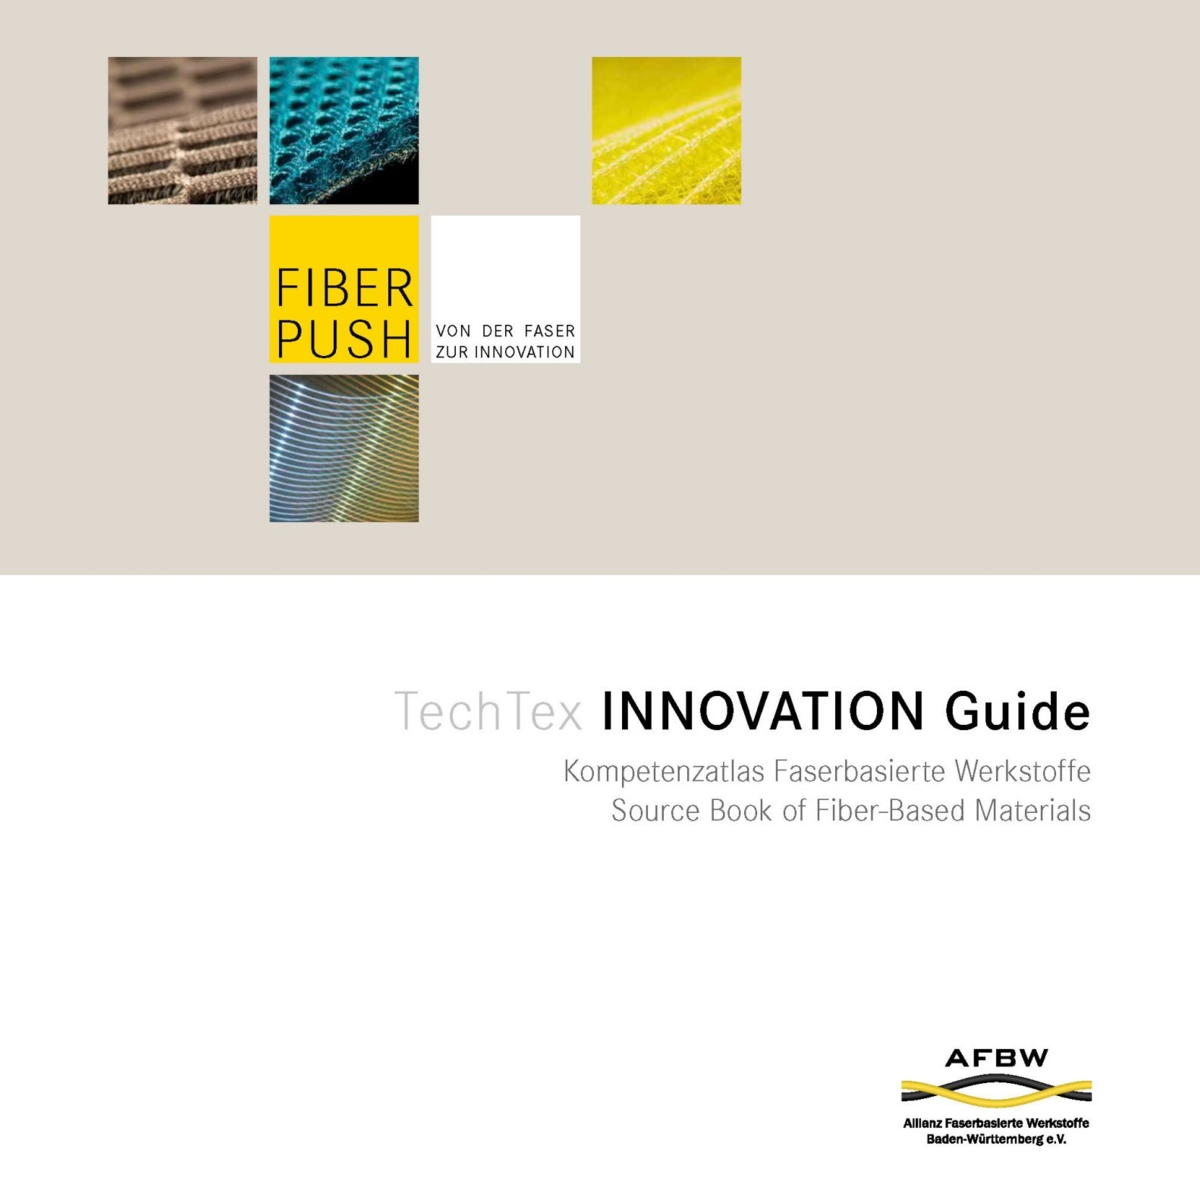 Die Broschüre "Techtex Innovation Guide" - als Download